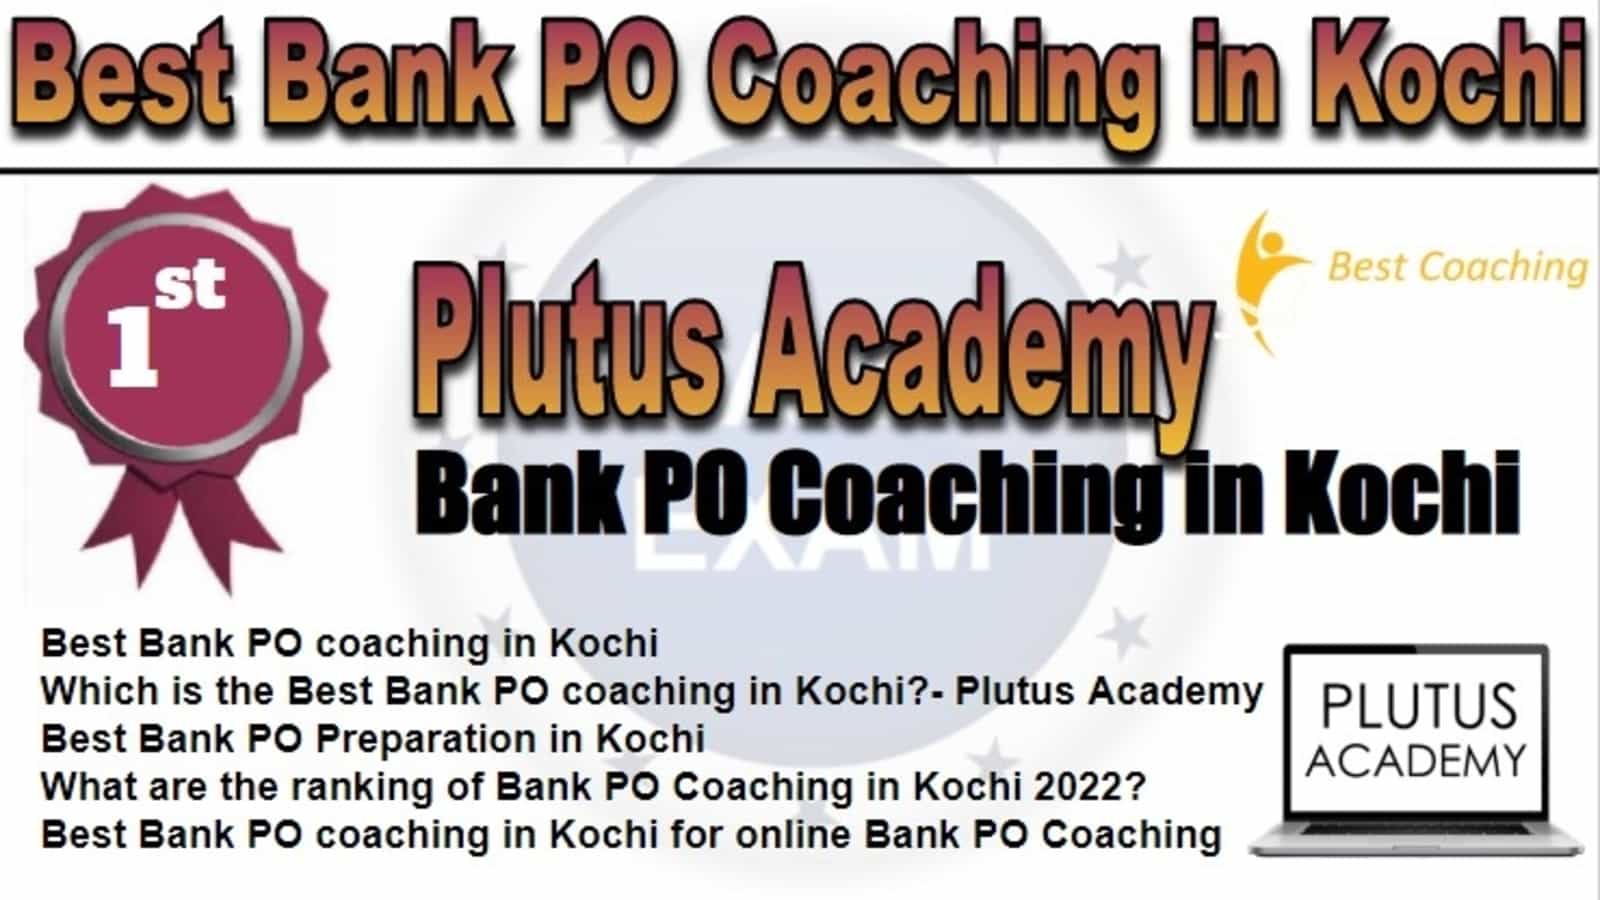 Rank 1 Best Bank PO Coaching in Kochi